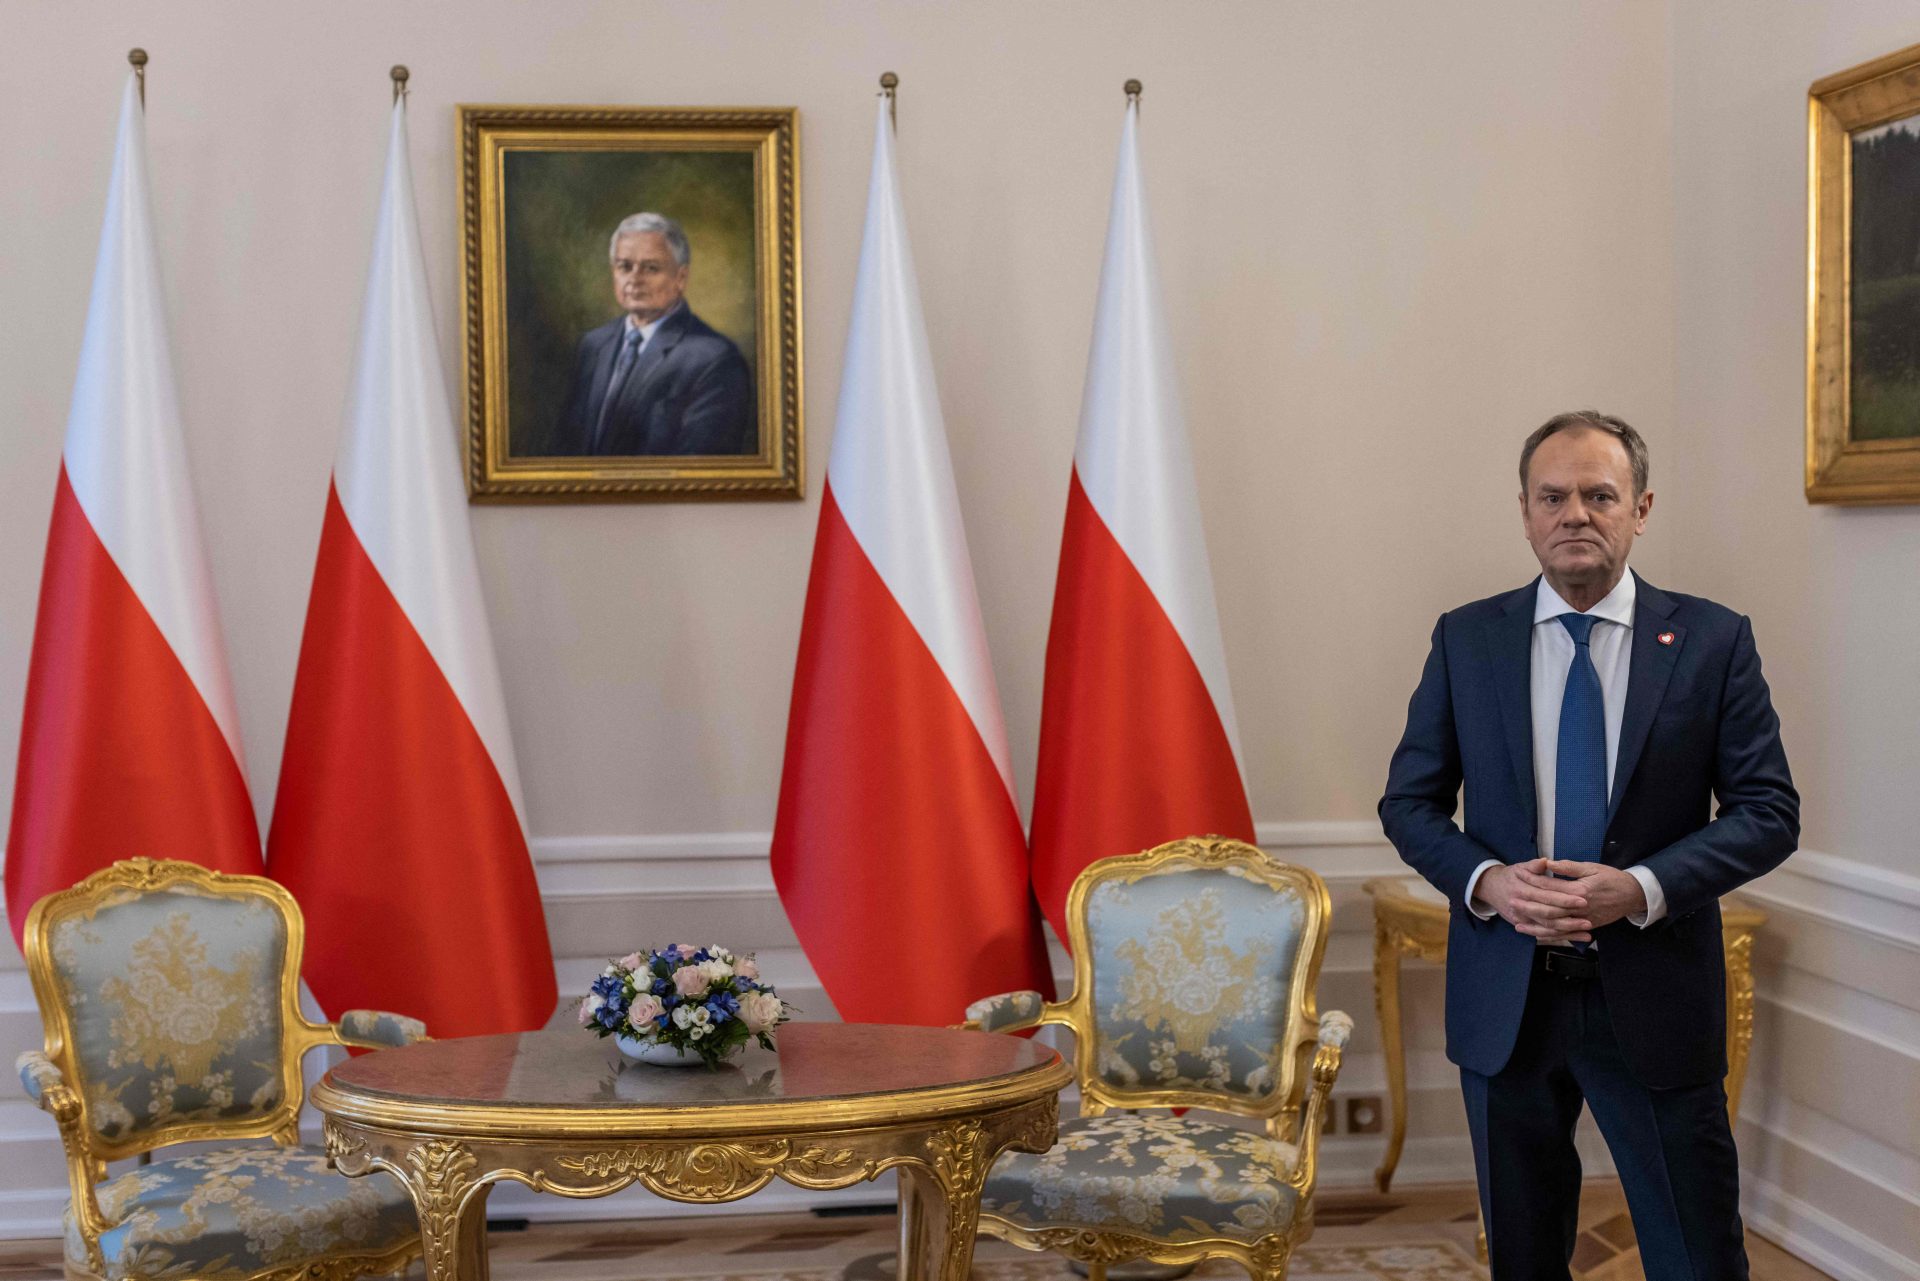 Primeiro-ministro polaco de visita a Kiev